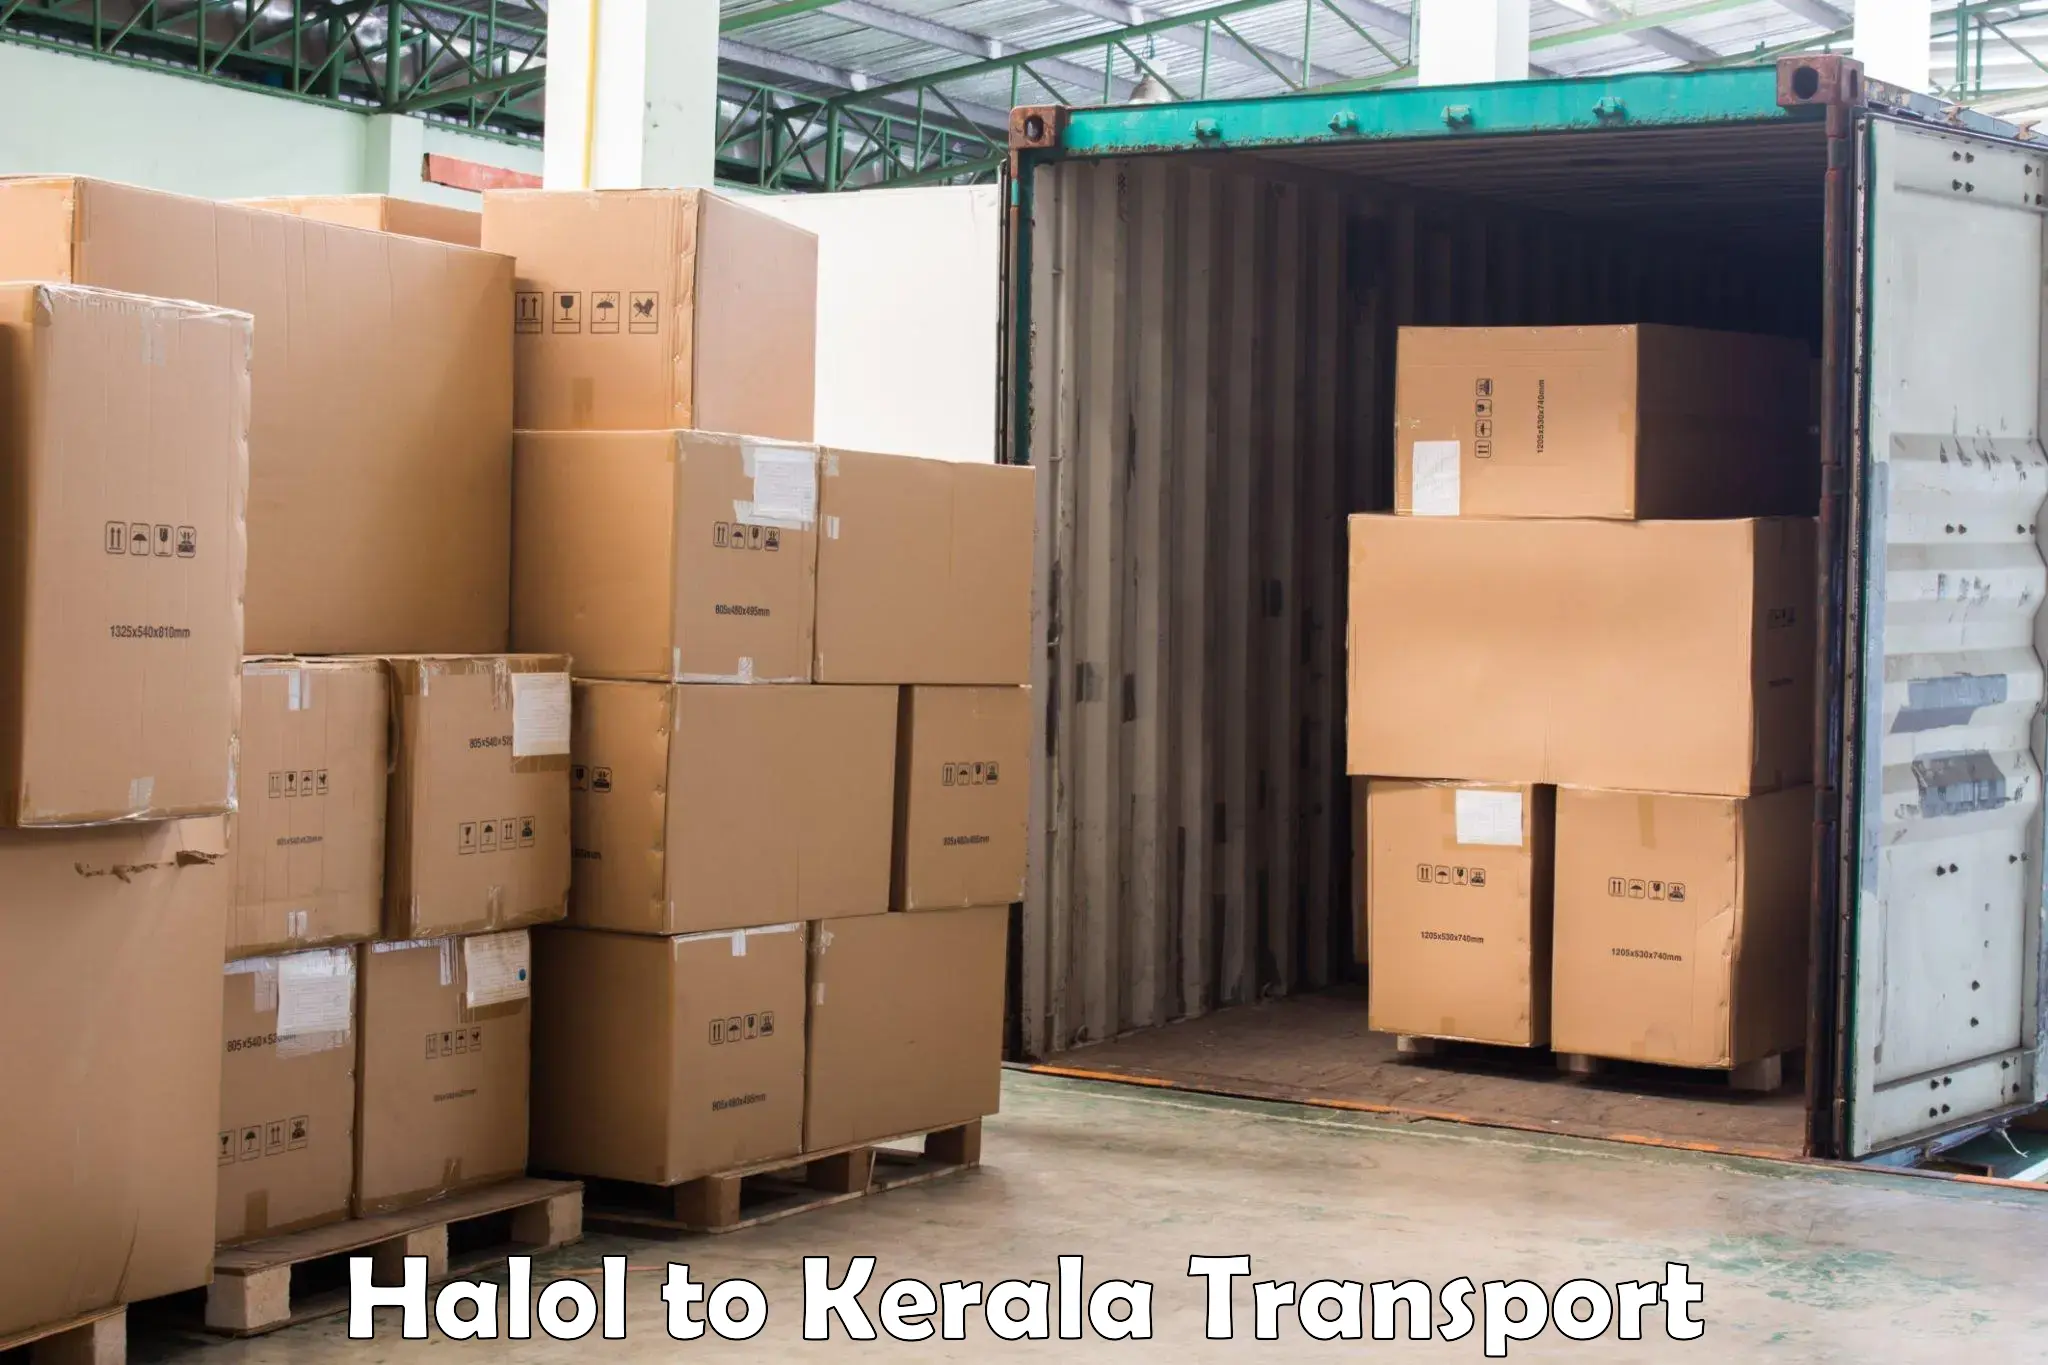 International cargo transportation services Halol to Kothanalloor